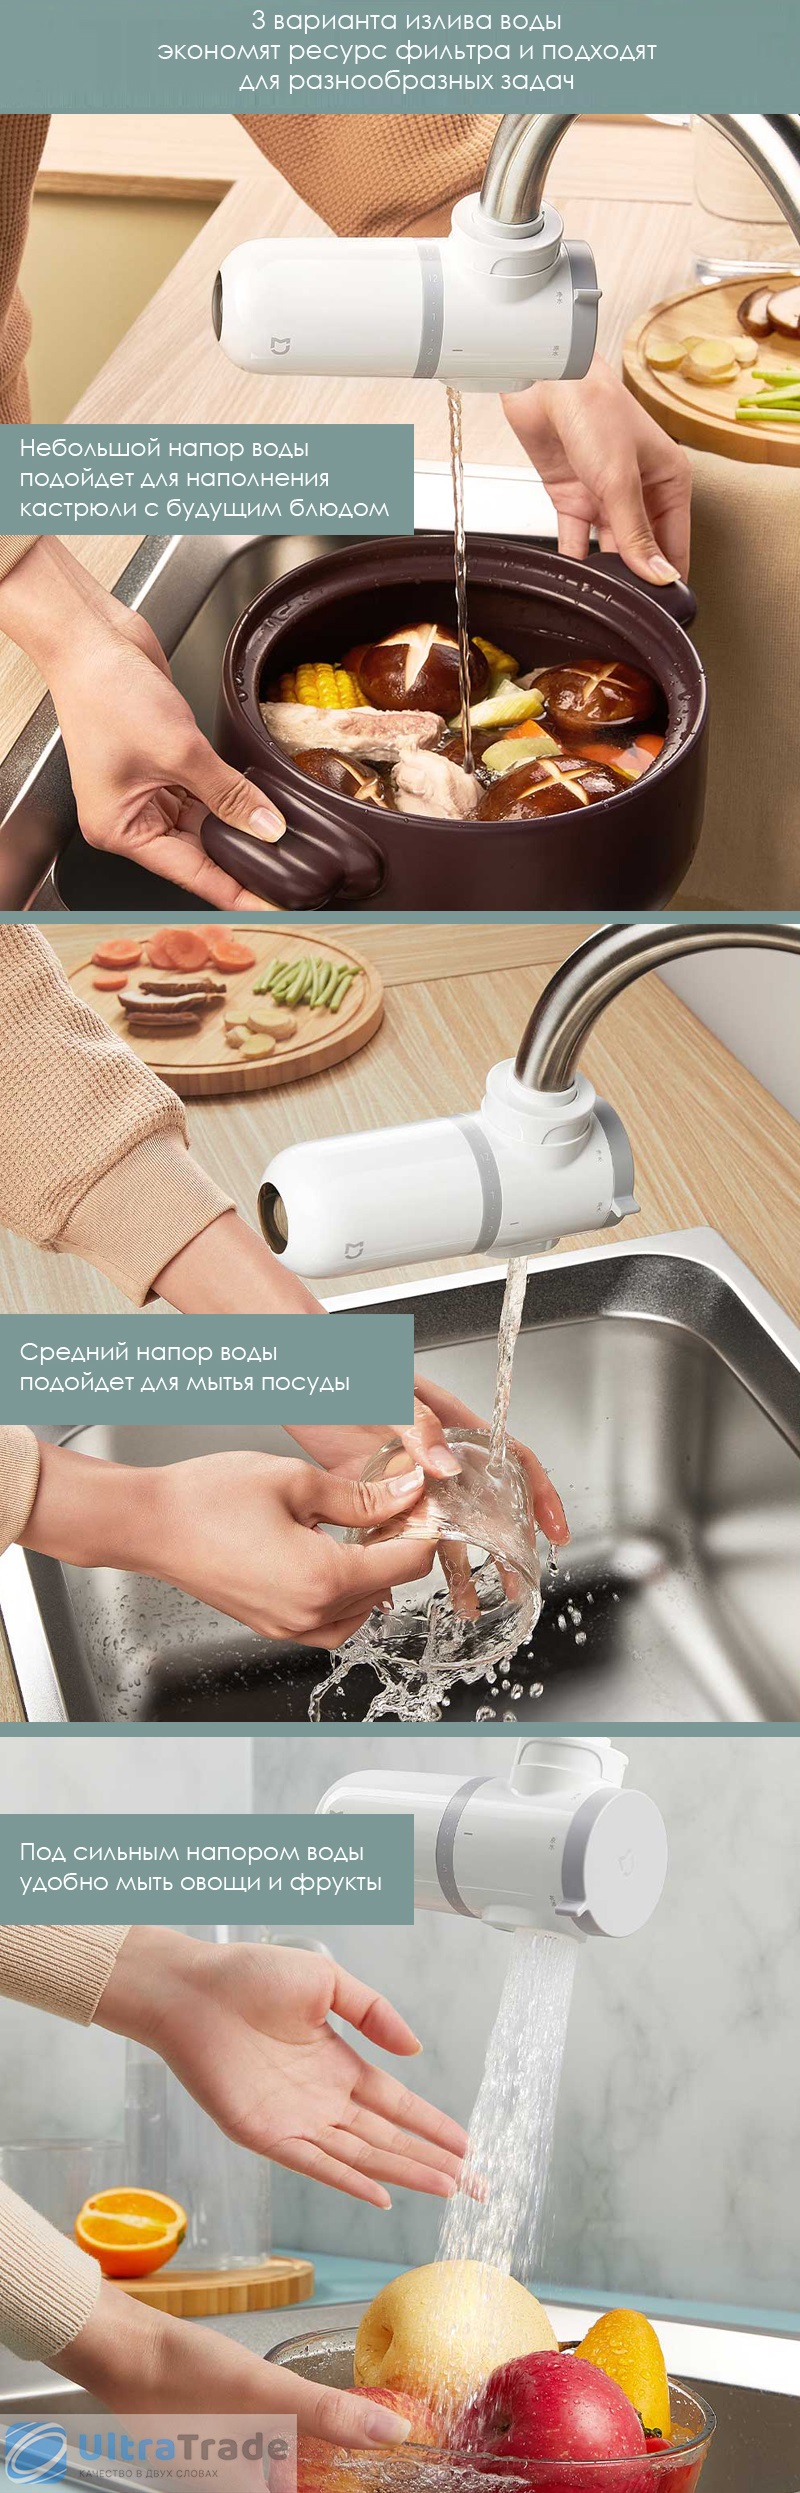 Очиститель воды Xiaomi Mijia Faucet Water Purifier (MUL11) - компактная новинка для кухни